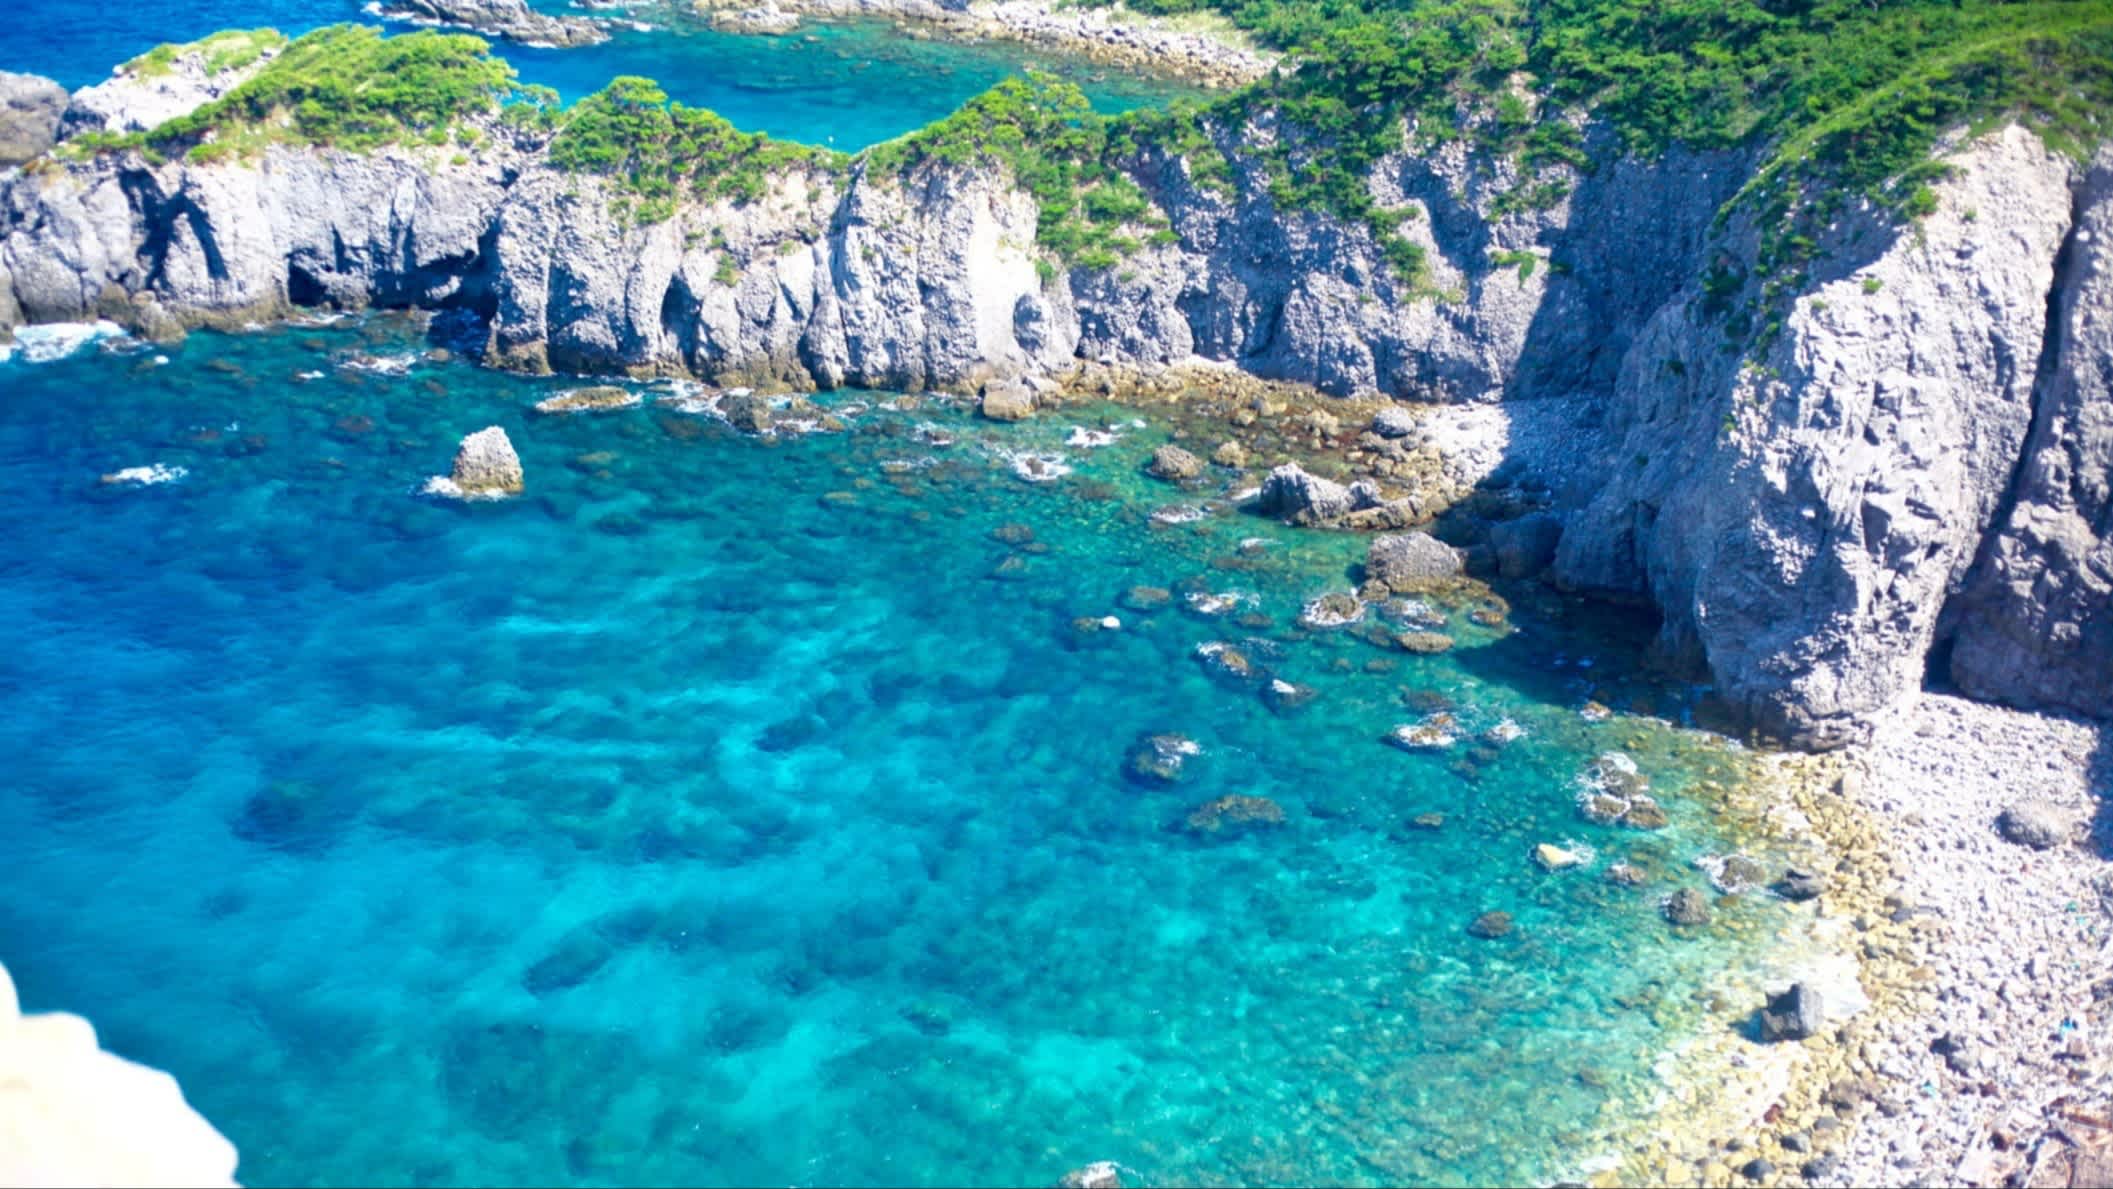 Blick auf die kleine Bucht von Shikinejima, Niijima-mura, Japan mit türkisblauem Wasser und Felsen.